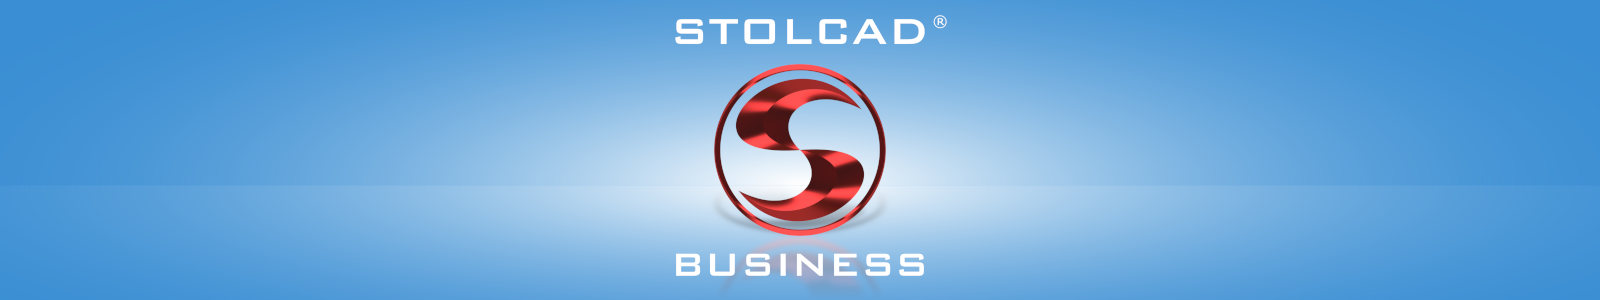 Stolcad Business - program dla sprzedawców okien, drzwi i rolet